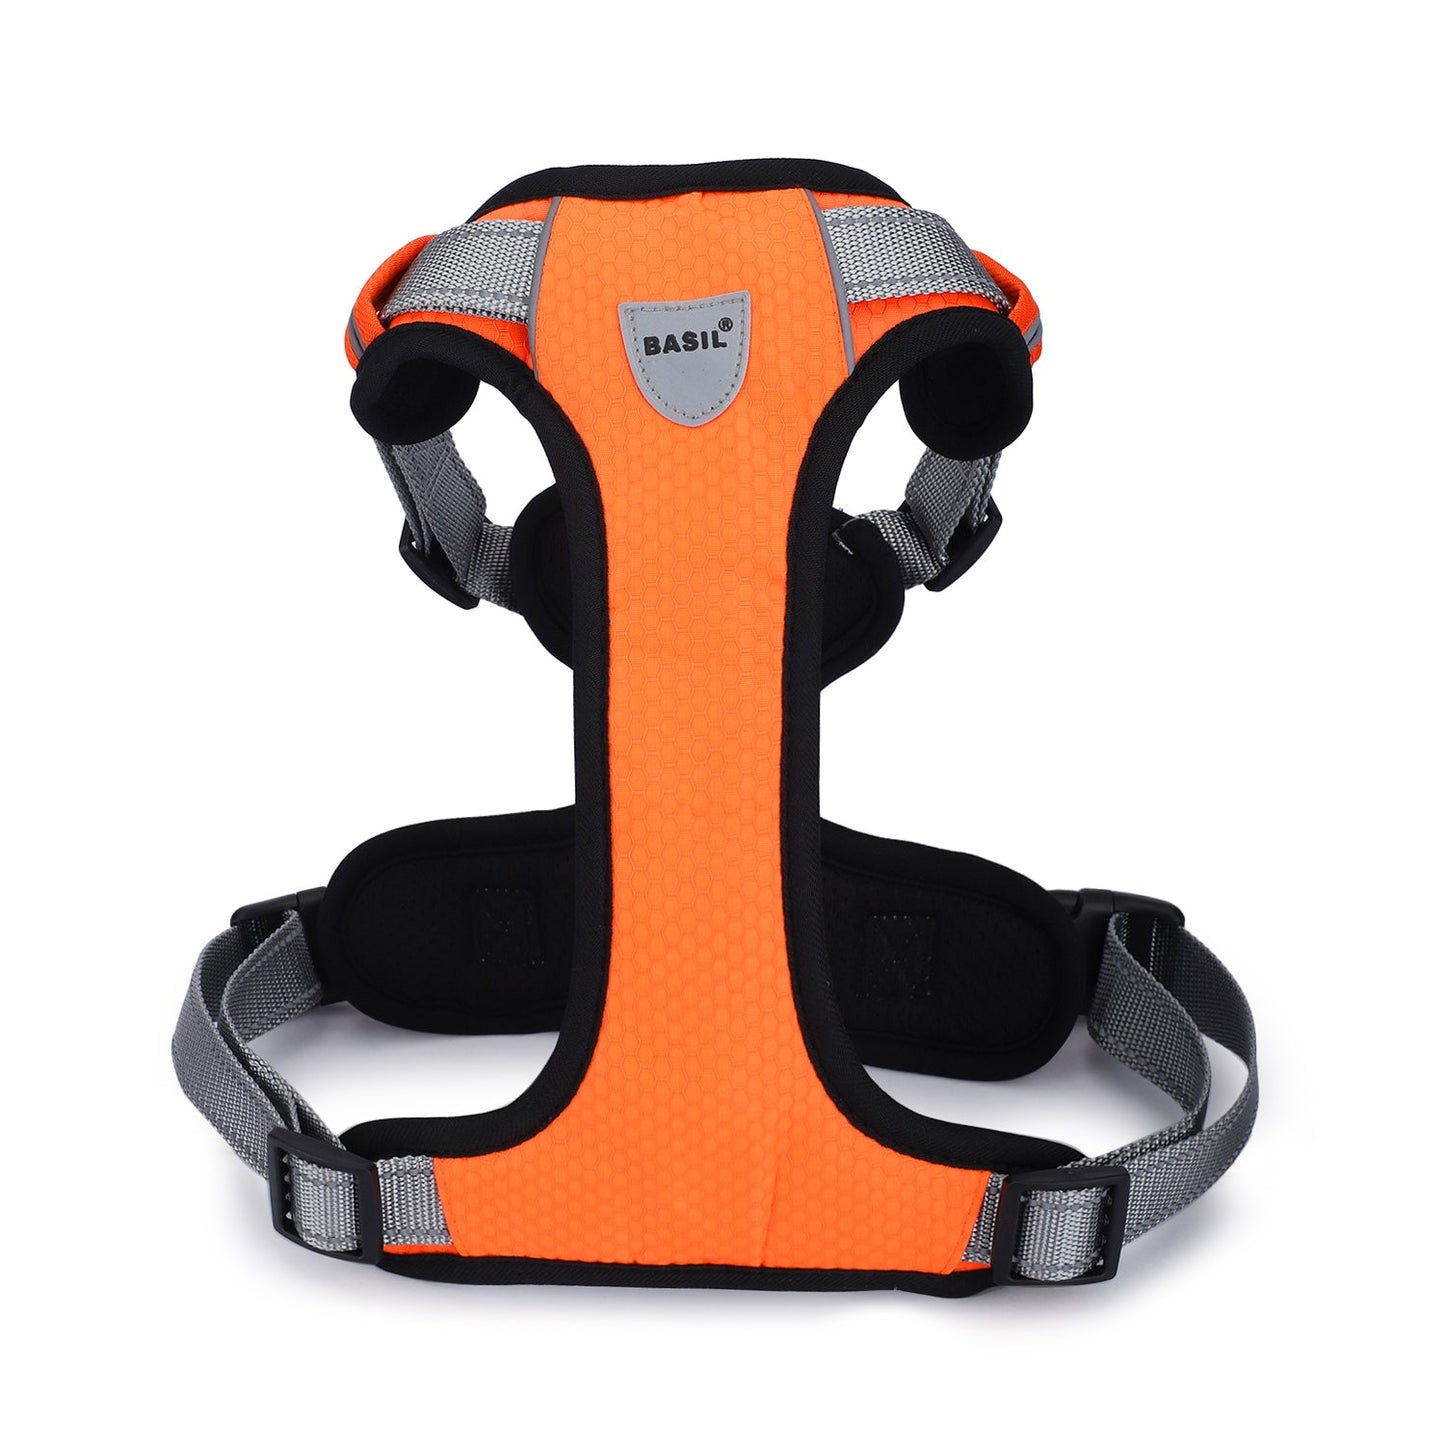 Basil Dog Handle Harness No-Pull Adjustable Vest Harness, Reflective Orange